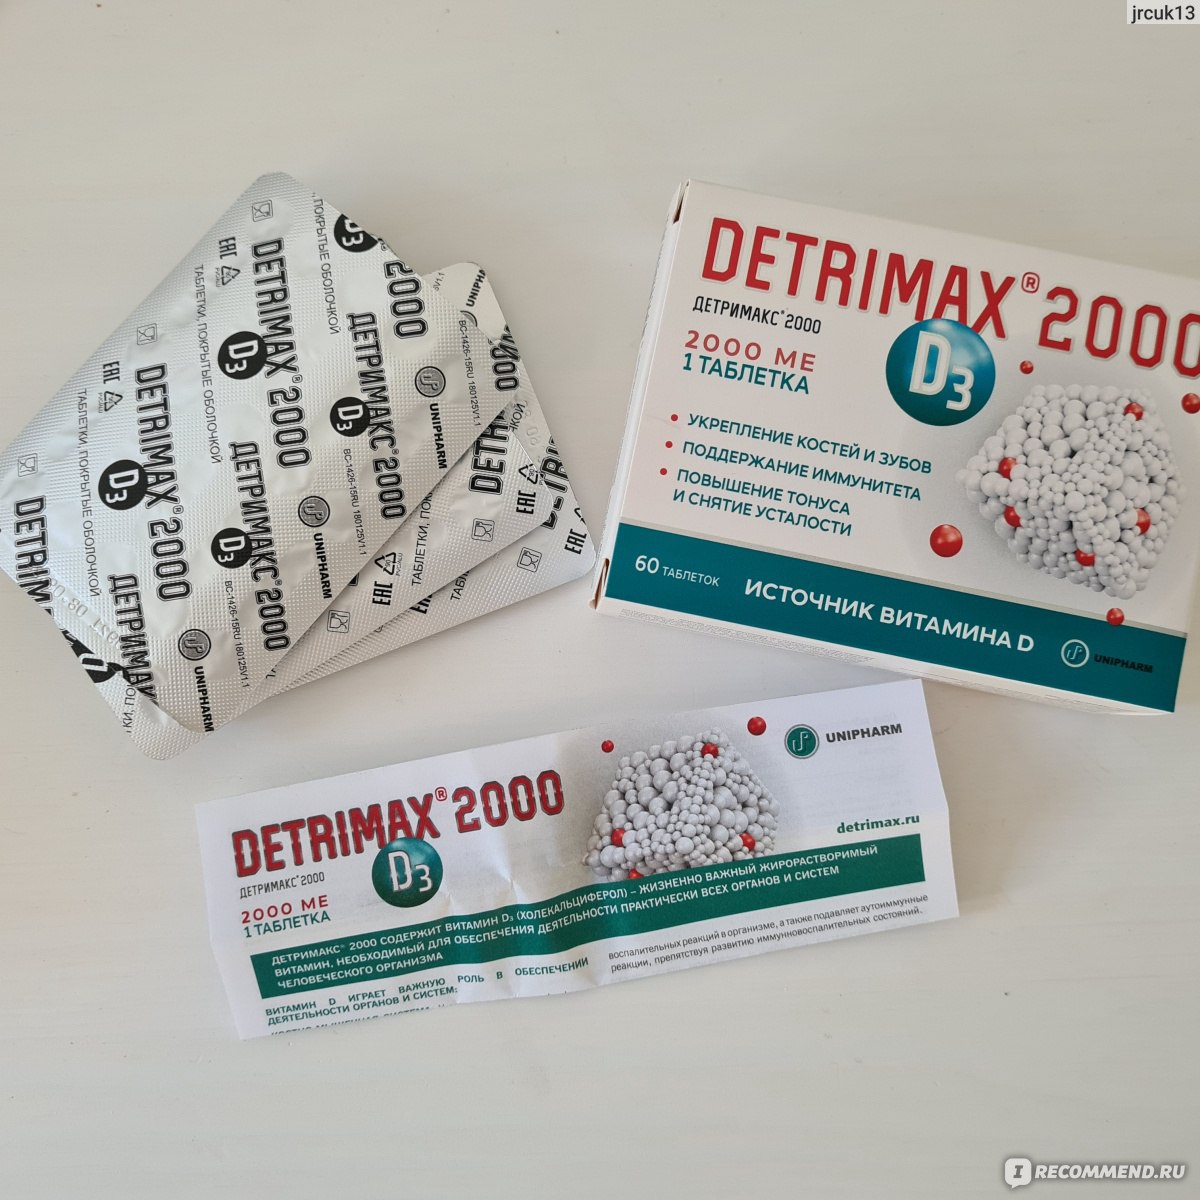 Детримакс 2000 фото таблетки